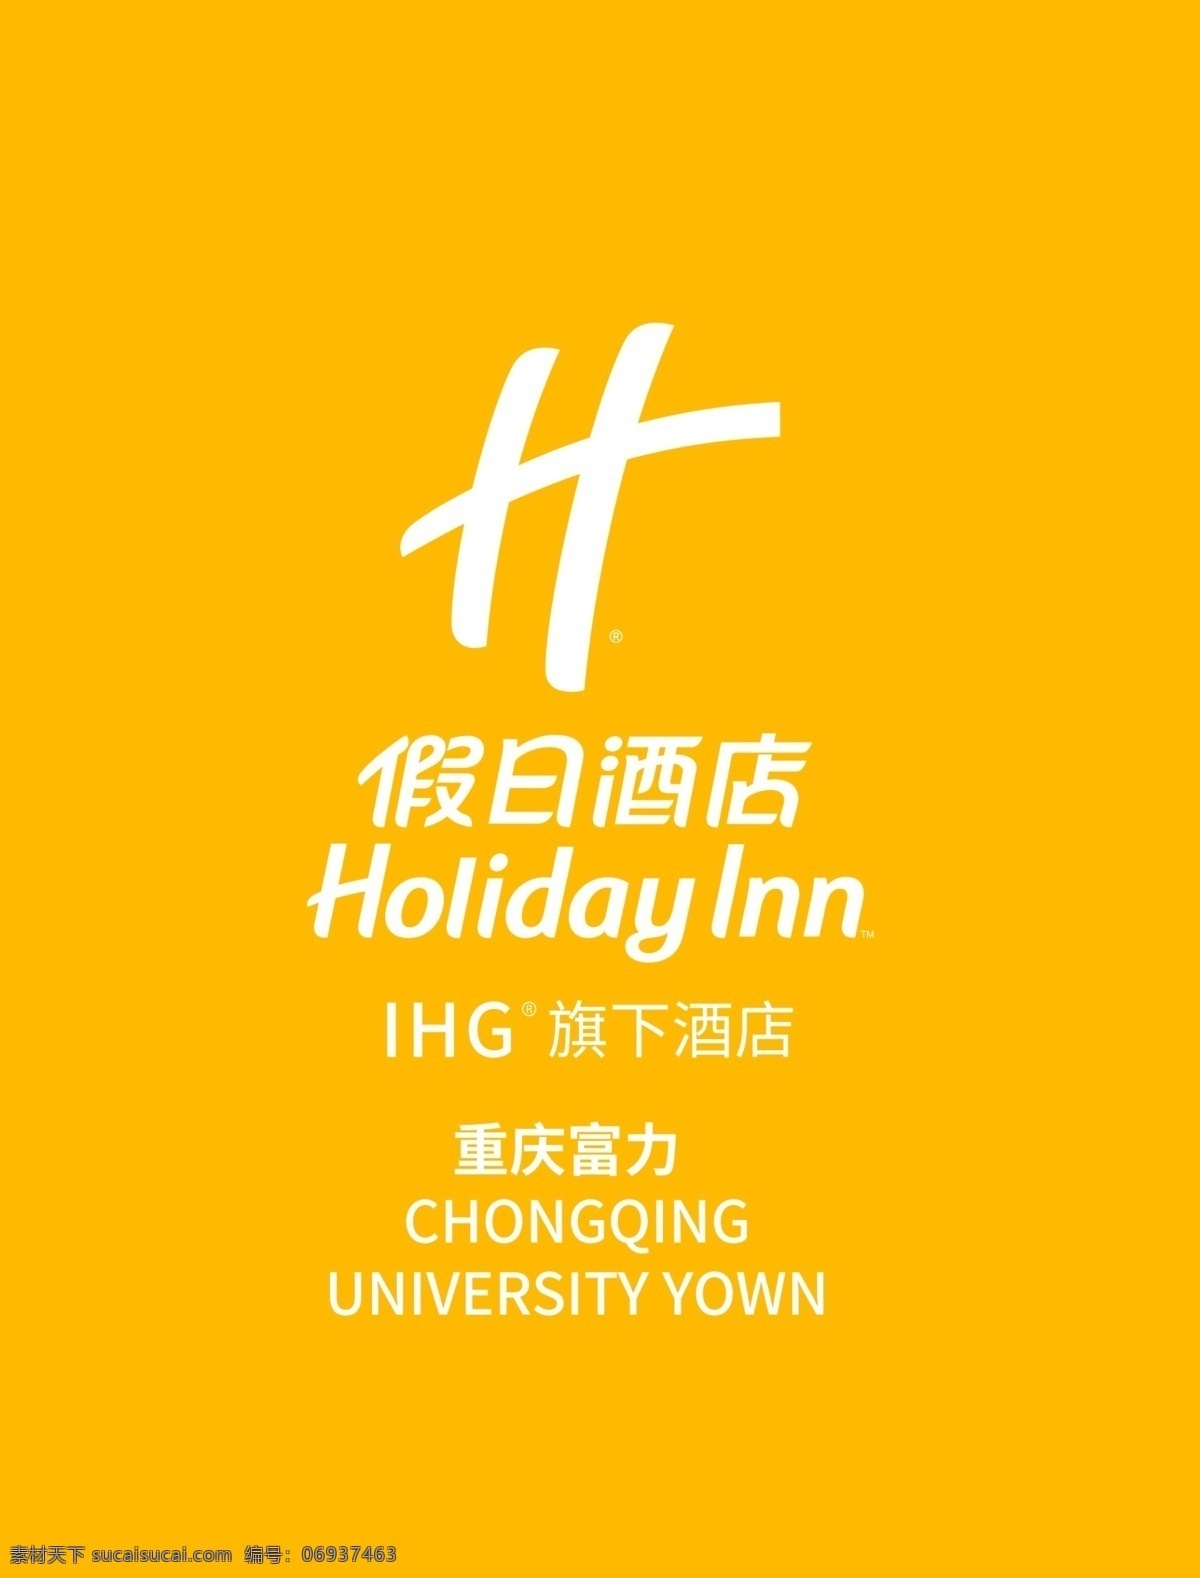 假日 酒店 logo 假日酒店 hig 旗下酒店 重启富力 logo设计